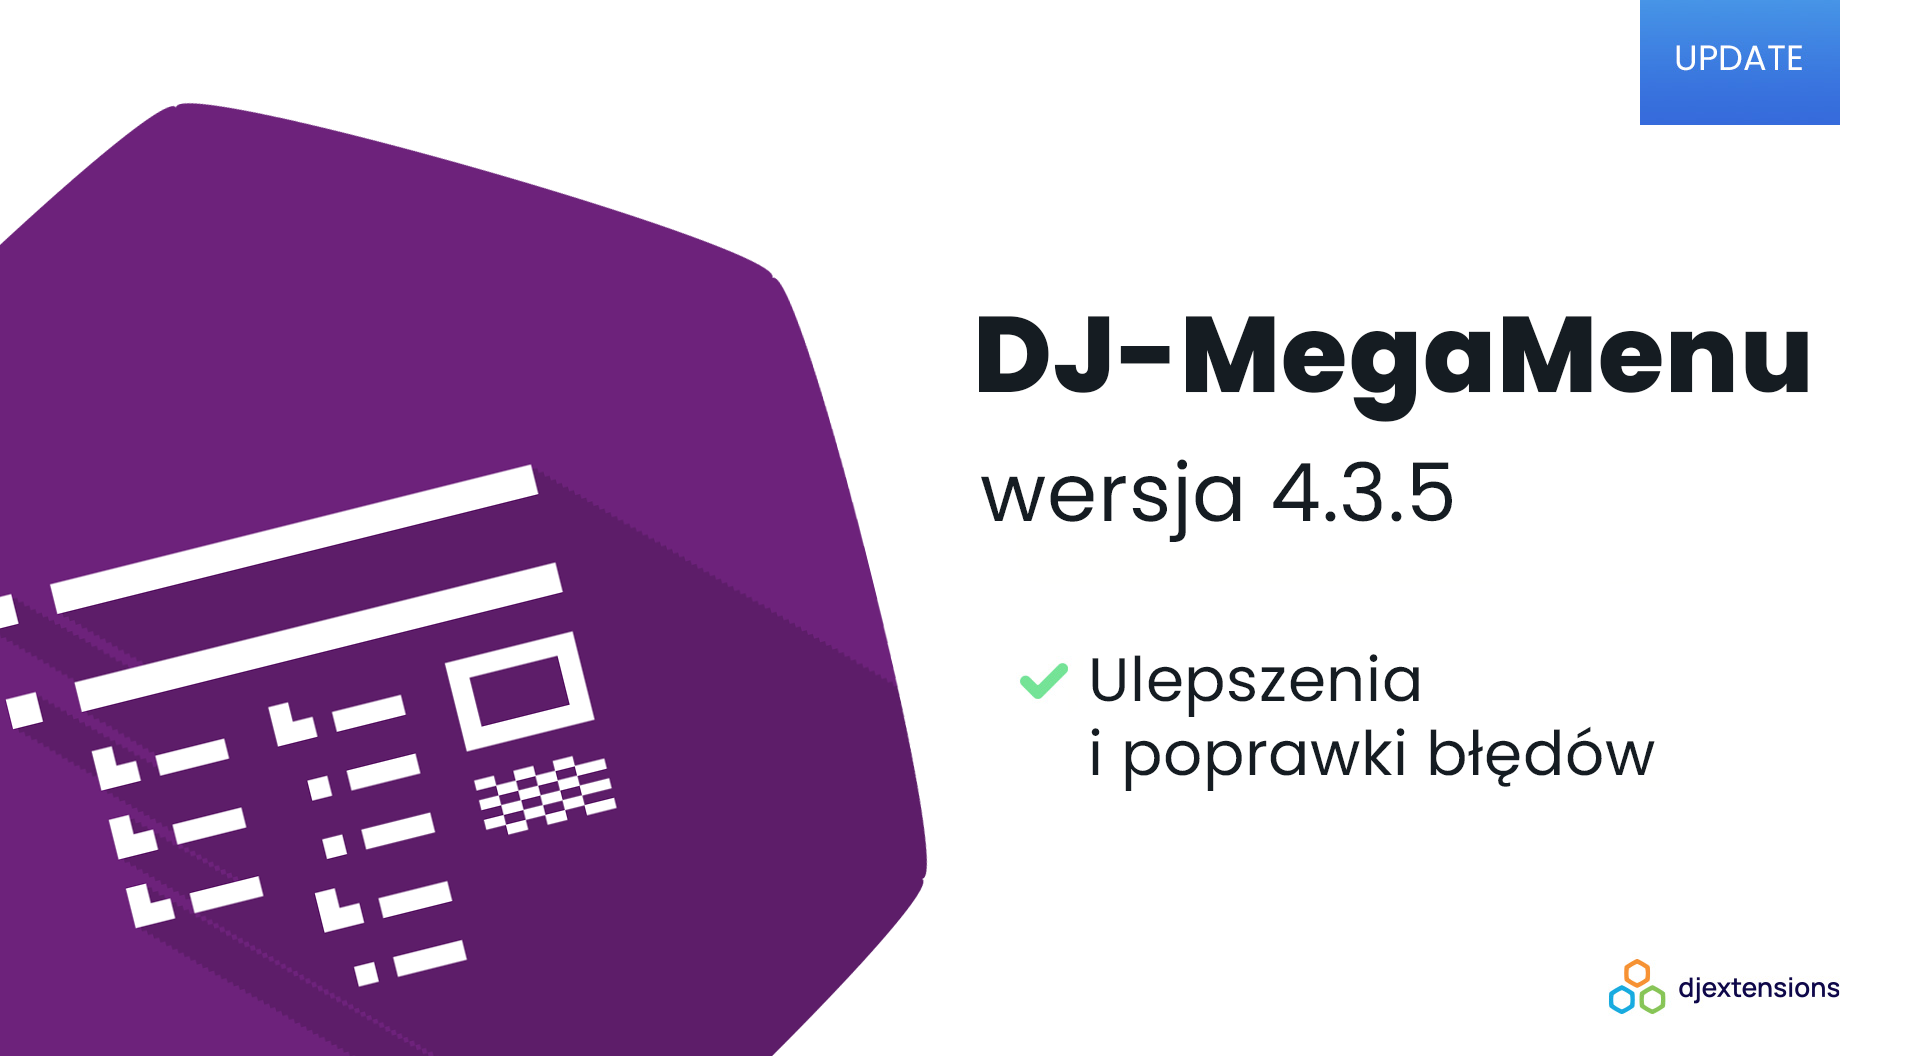 DJ-MegaMenu w wersji 4.3.5